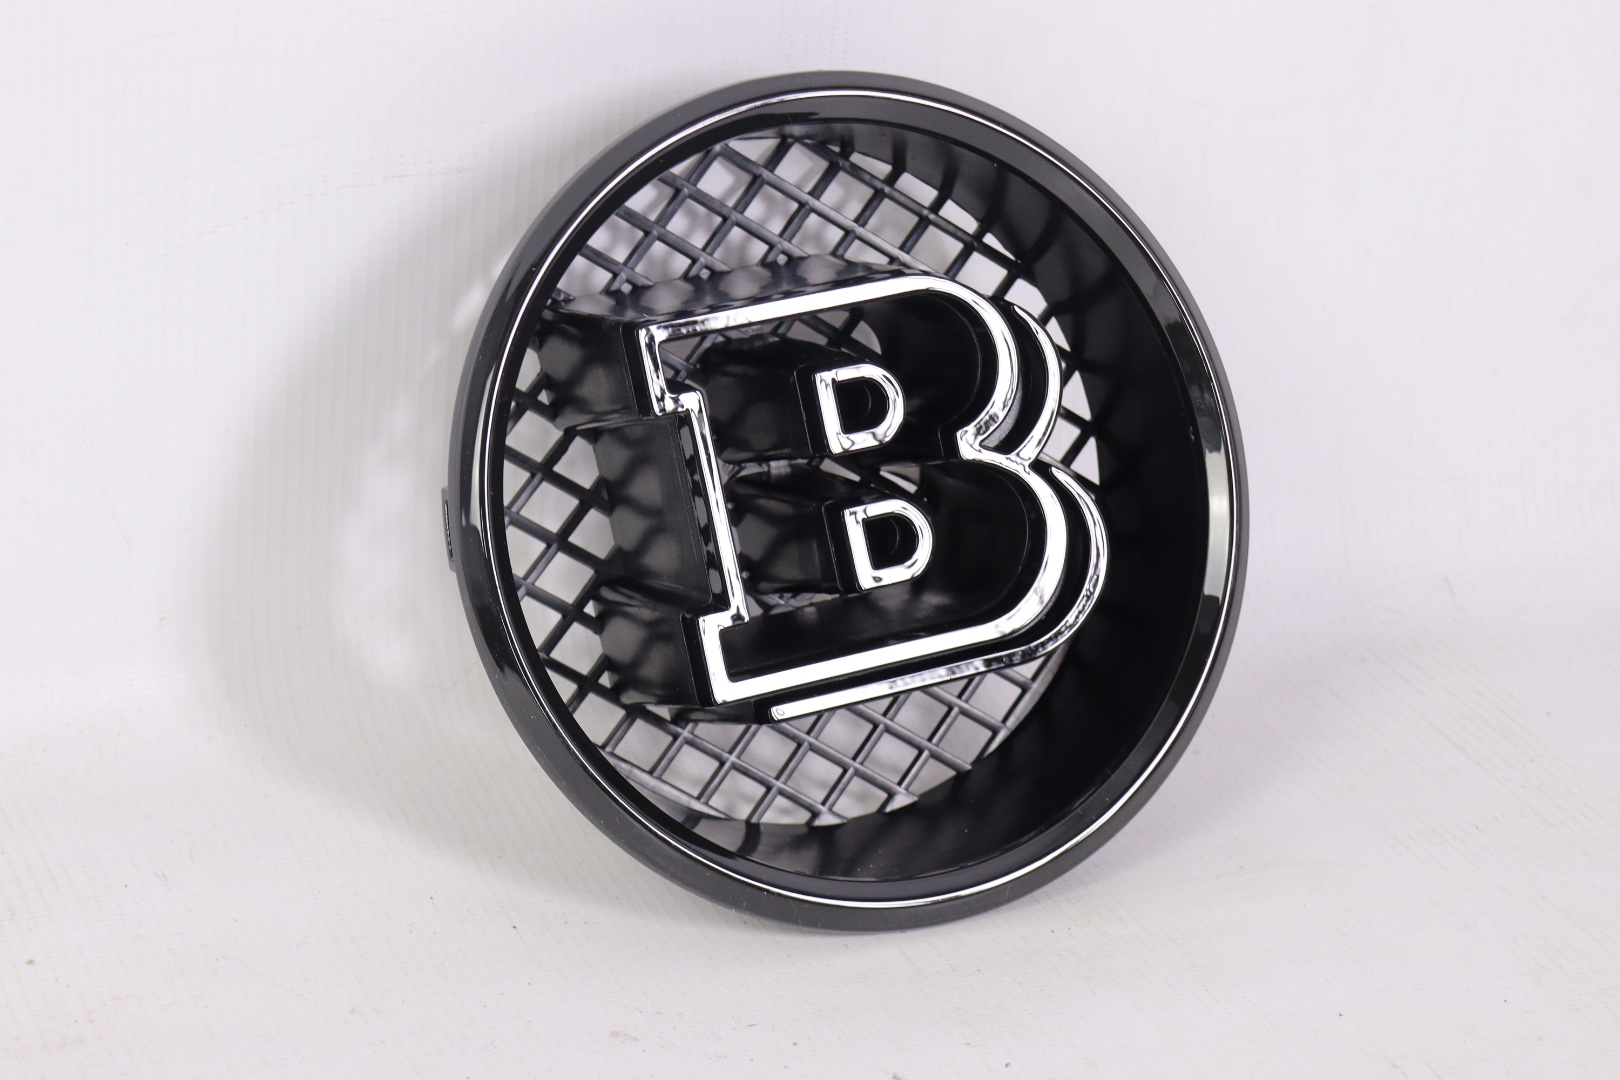 Radiator grille BRABUS Logo Emblem badge 18.5cm for Mercedes Benz